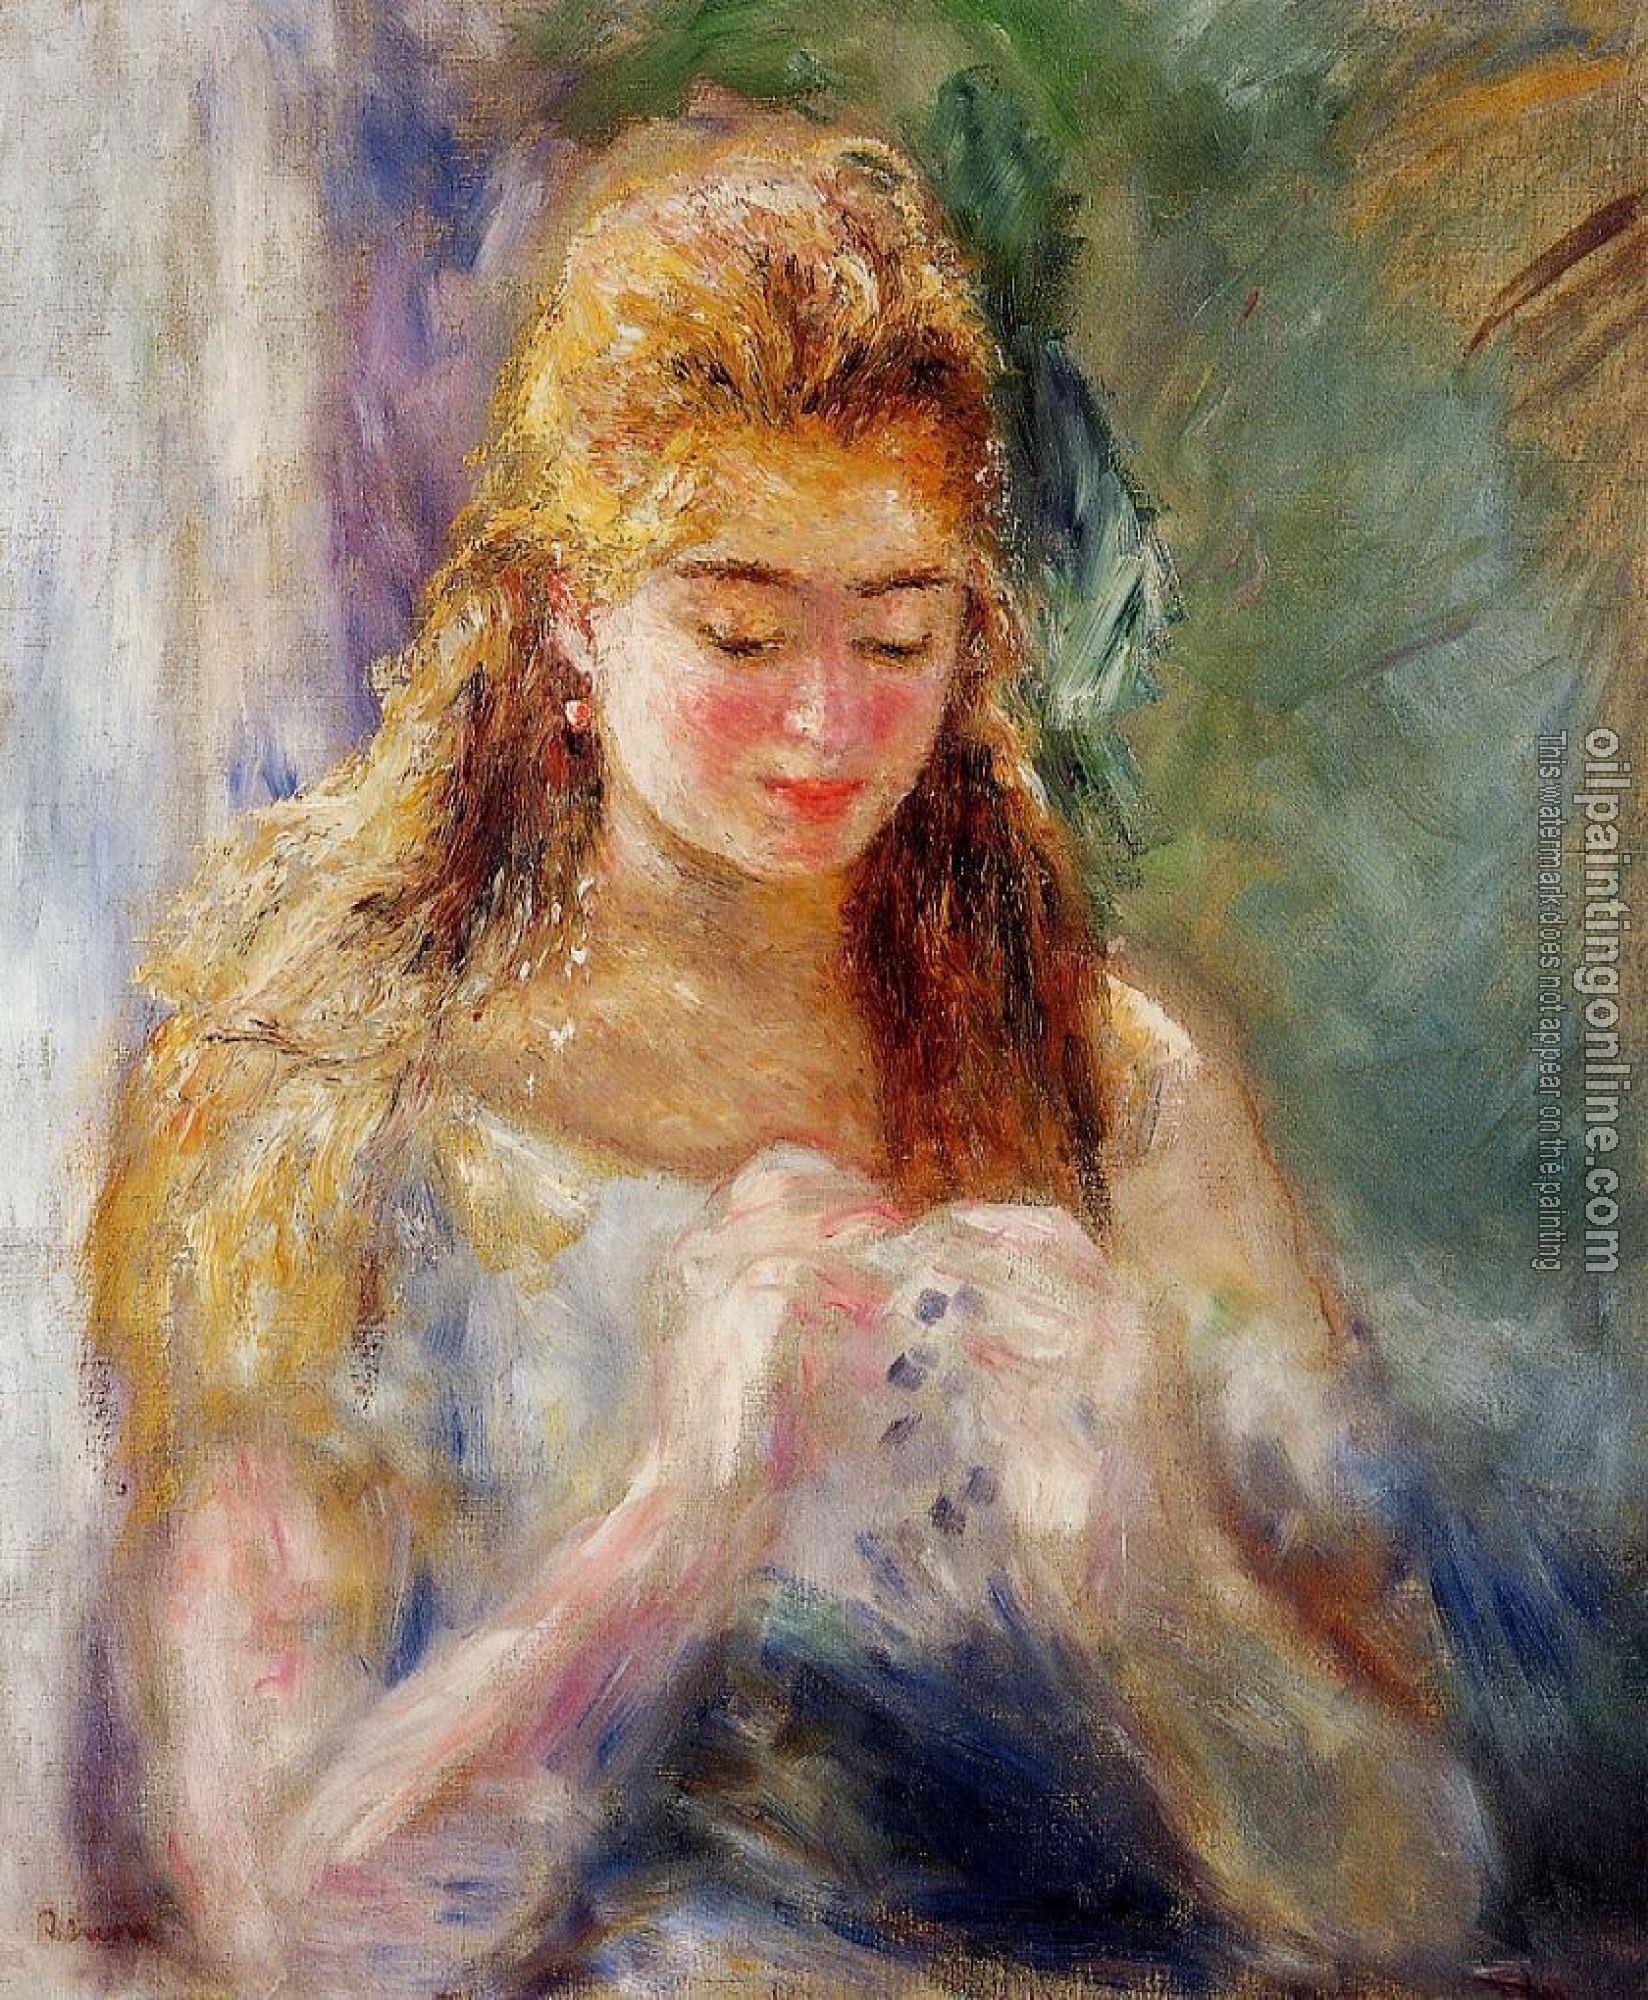 Renoir, Pierre Auguste - La Couseuse